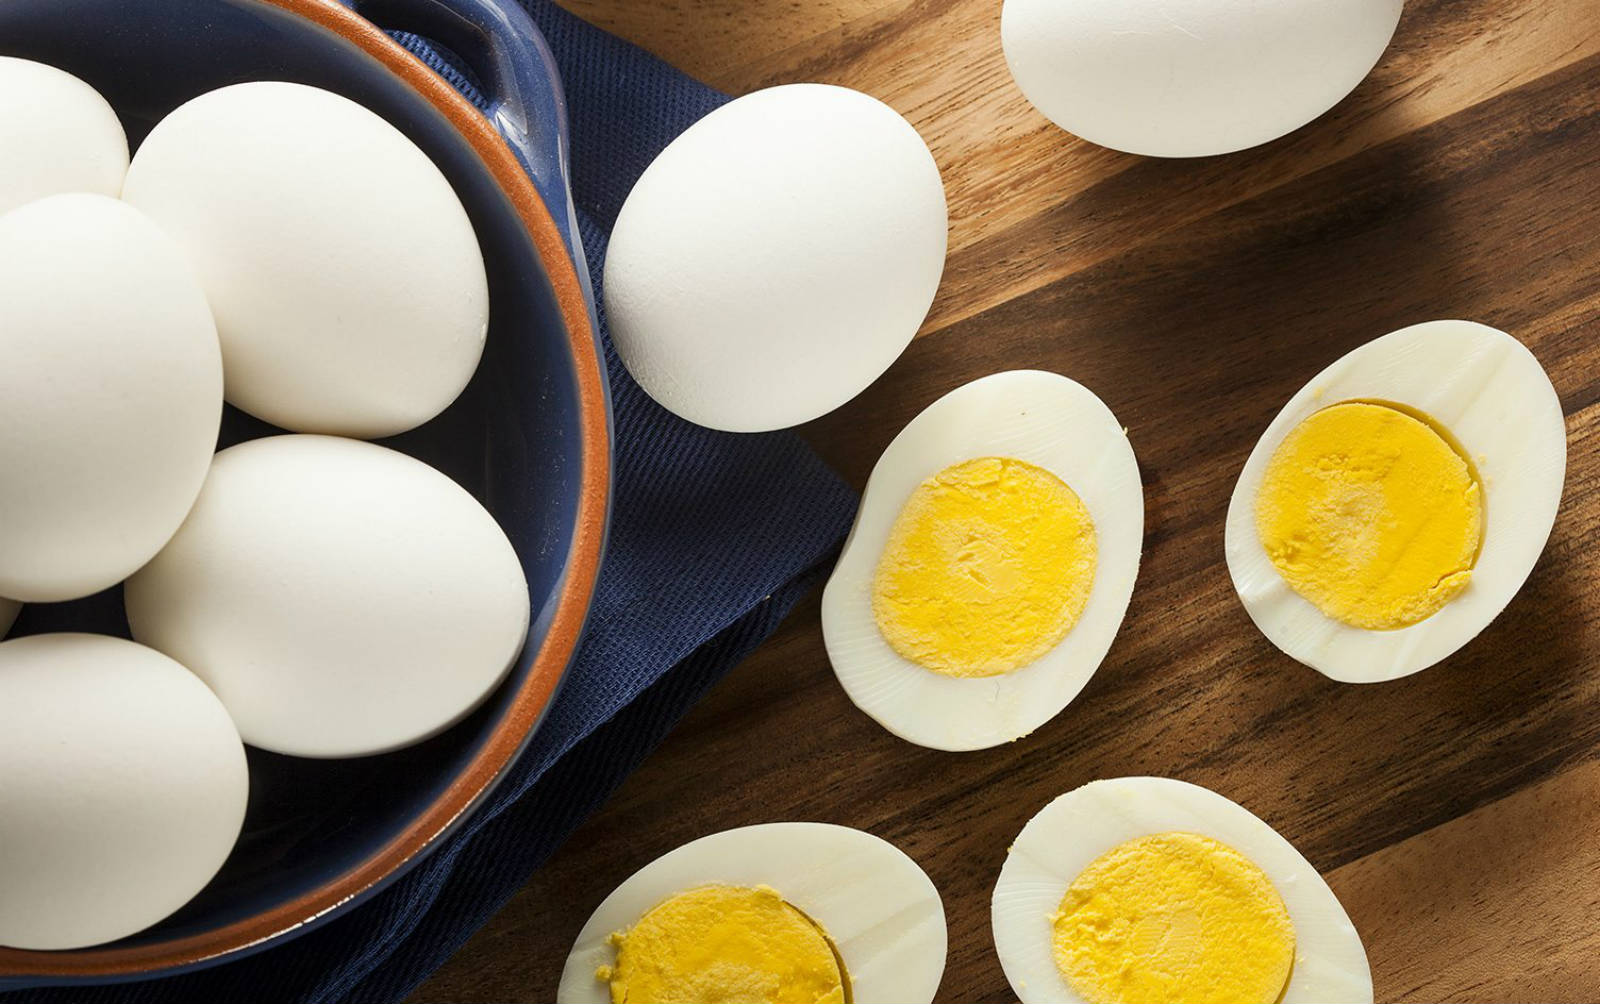 כמה ביצים בטוחות לאכילת חולי כולסטרול בכל יום?